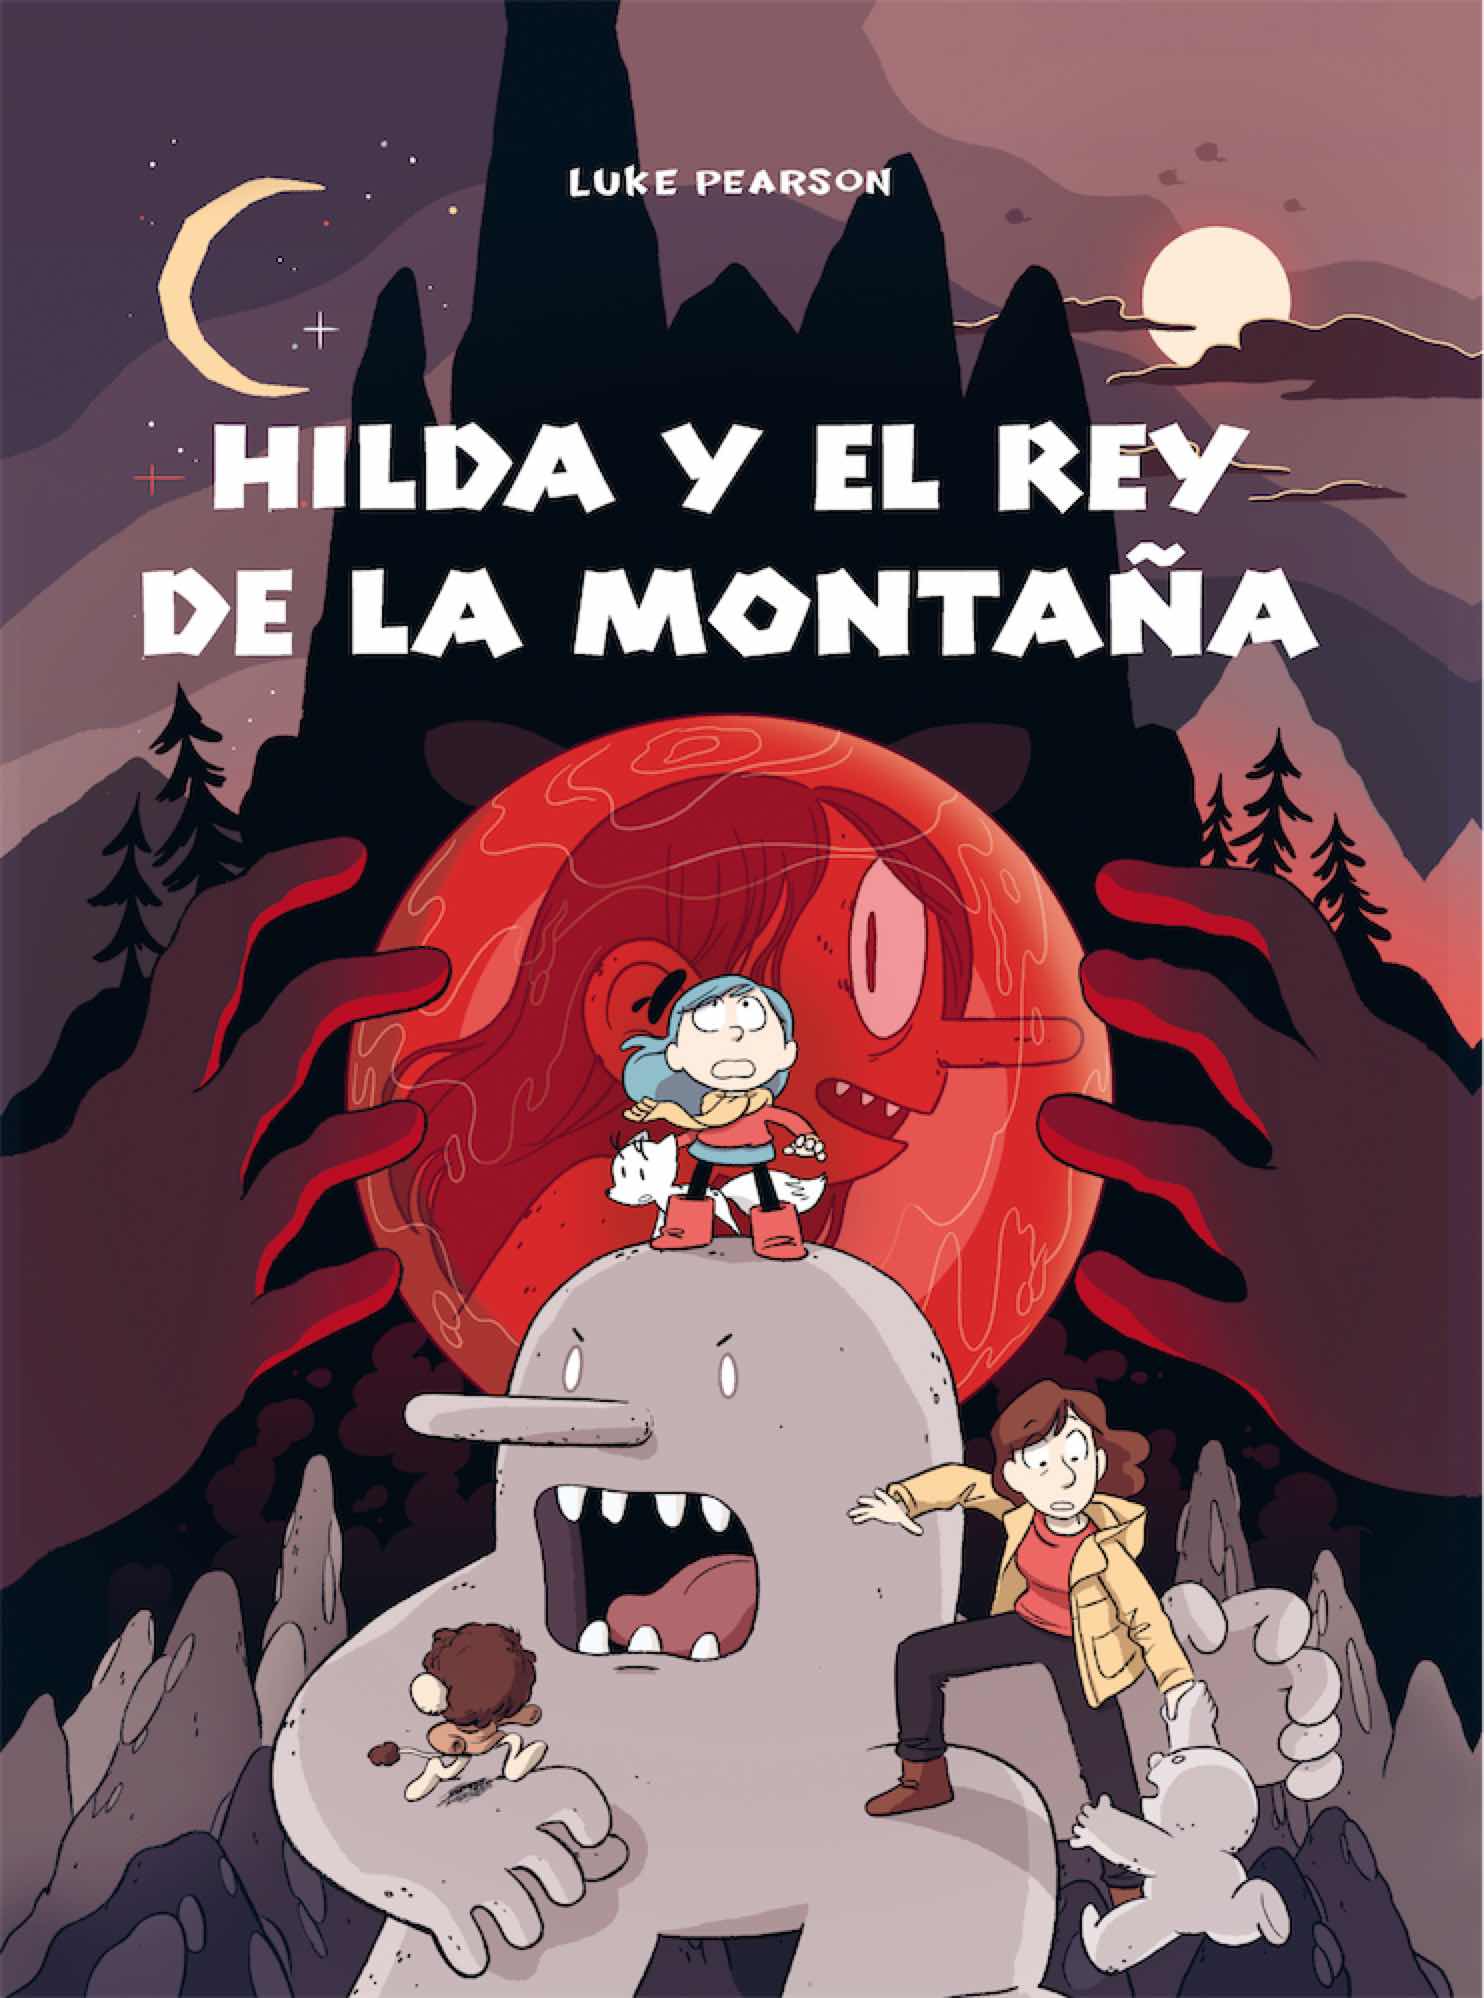 HILDA Y EL REY DE LA MONTAÑA